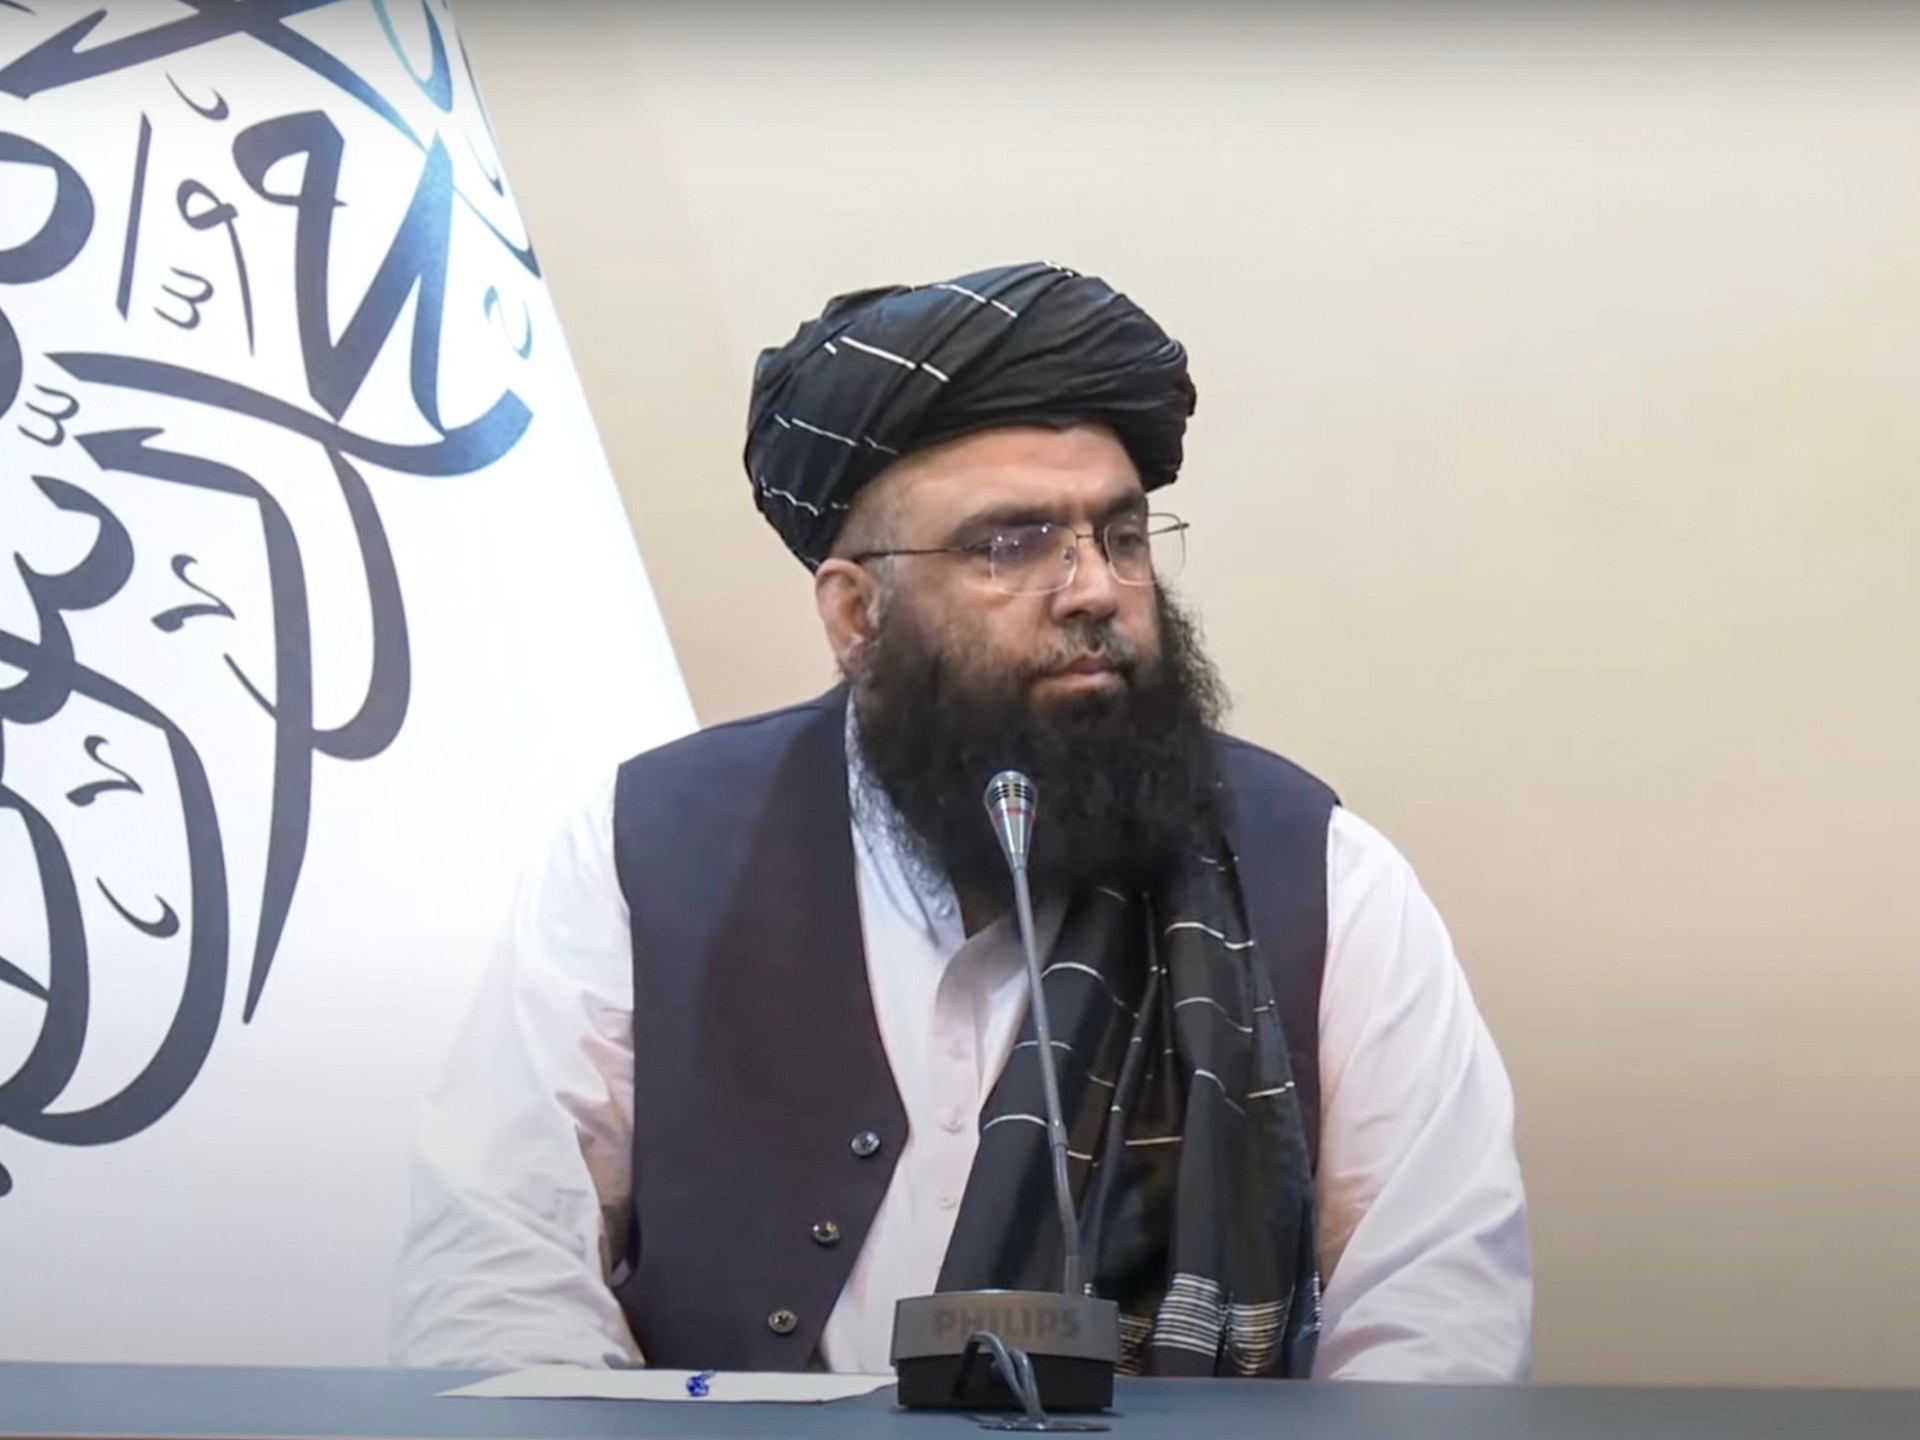 Siapakah Maulvi Abdul Kabir, perdana menteri baru Afghanistan yang ditunjuk oleh Taliban?  |  Berita Taliban